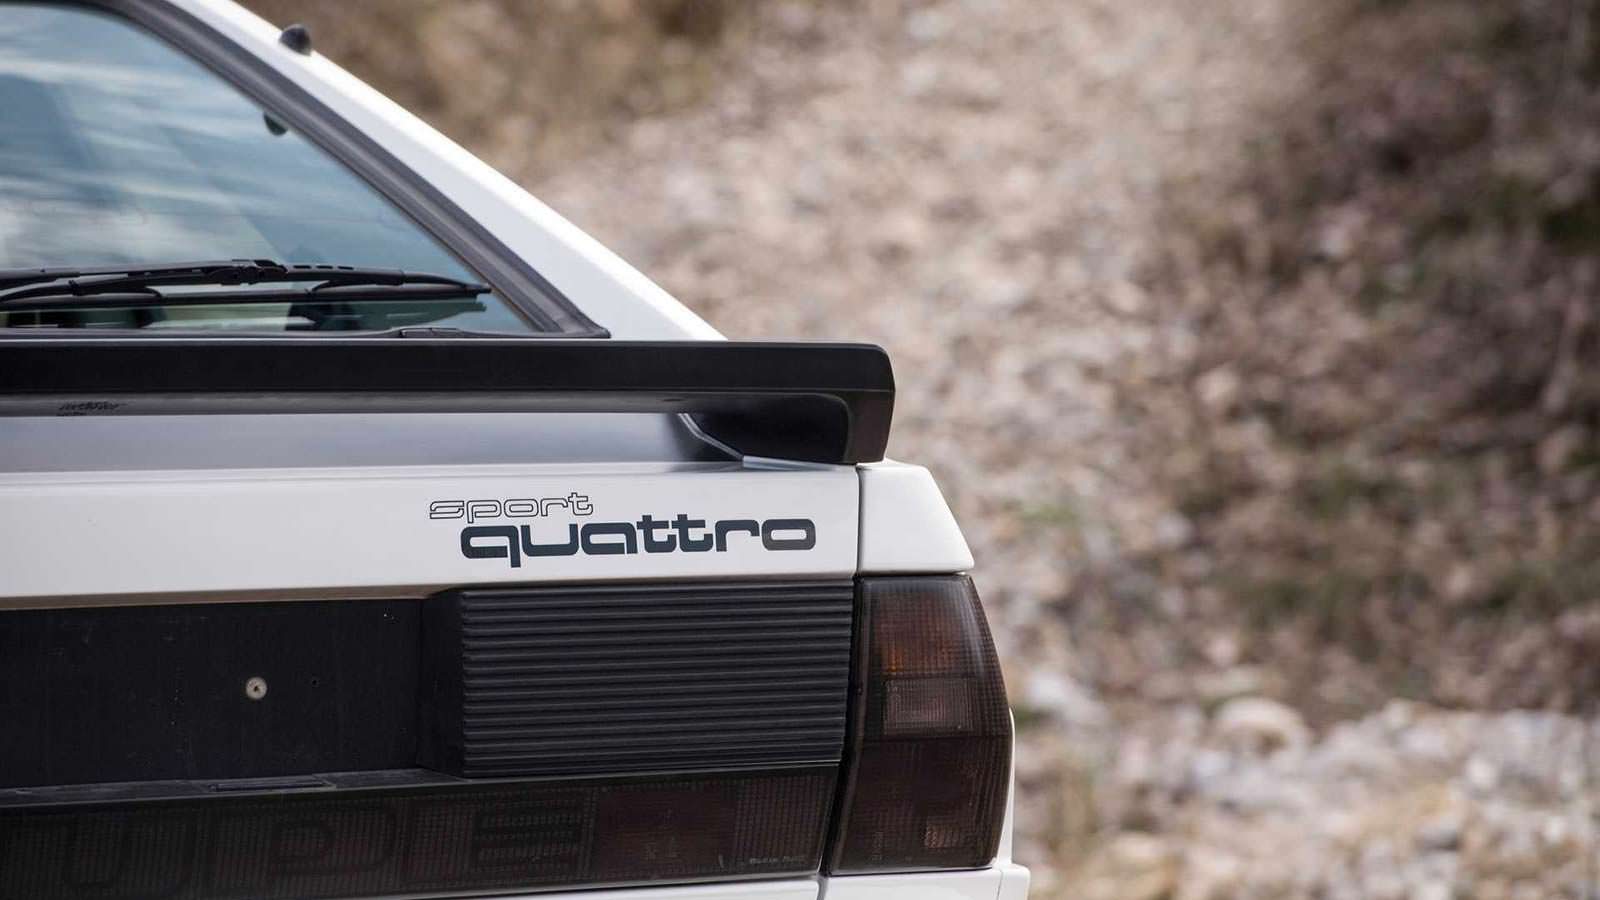 Надпись Sport Quattro на крышке багажника